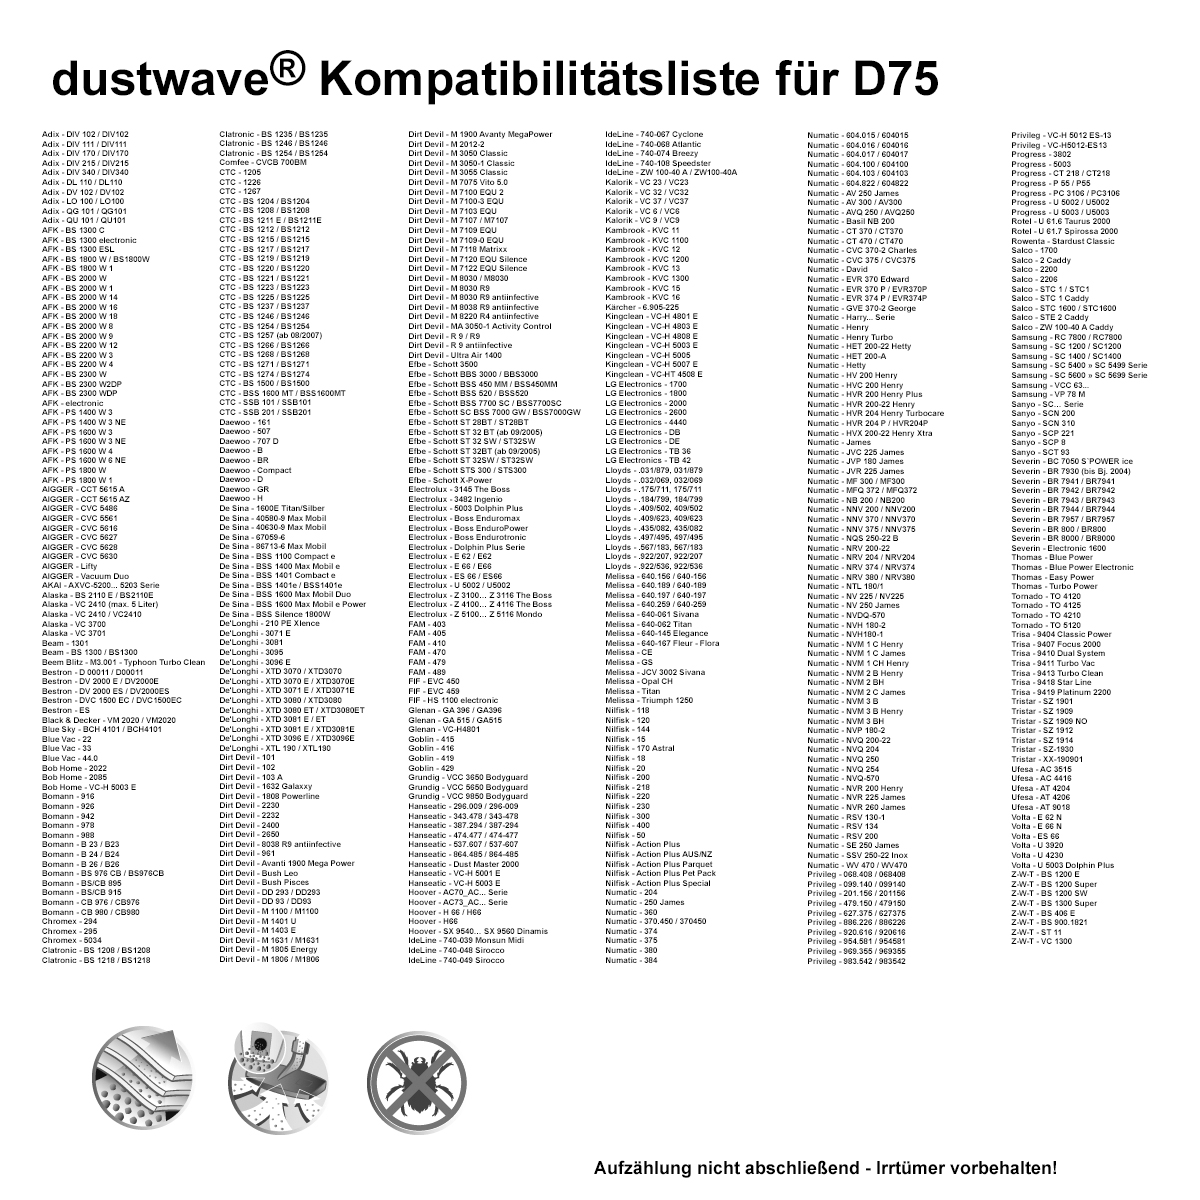 Dustwave® 1 Staubsaugerbeutel für AFK PS 1600 W 3 - hocheffizient mit Hygieneverschluss - Made in Germany